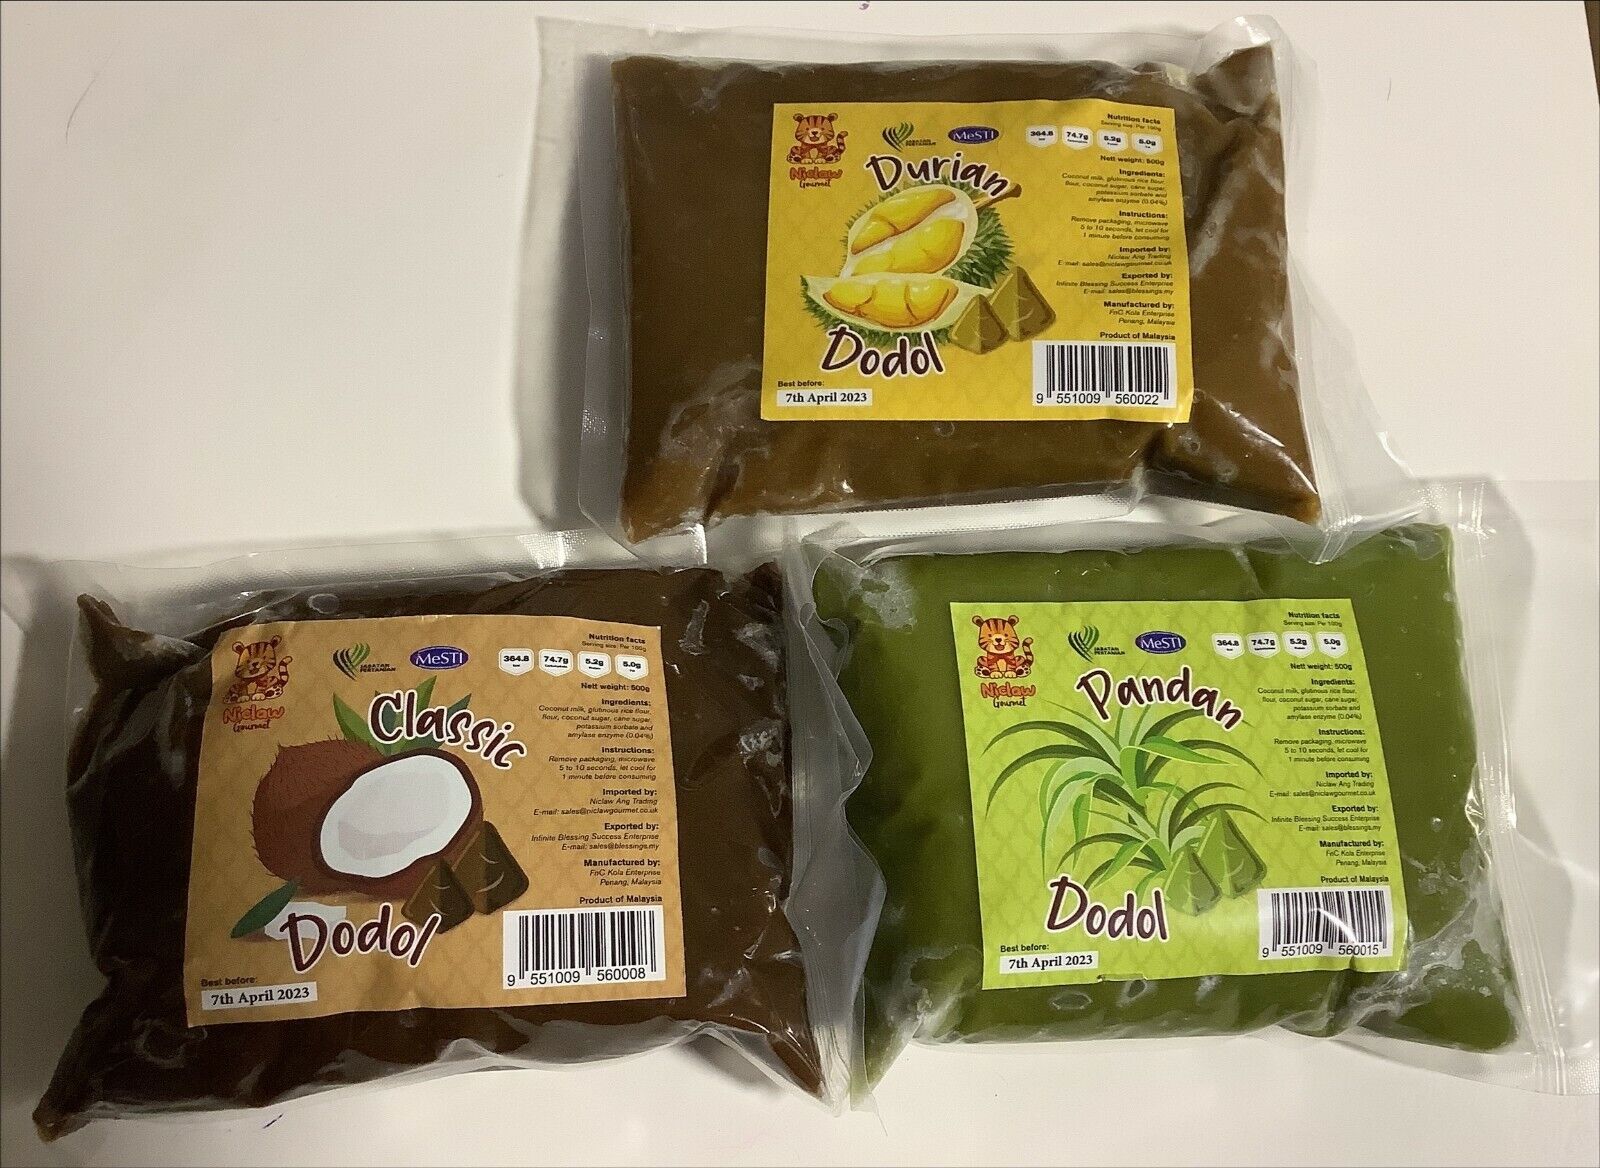 500g Dodol X 3 paquetes, mezclar y combinar Pandan, Coco azúcar y sabores durion